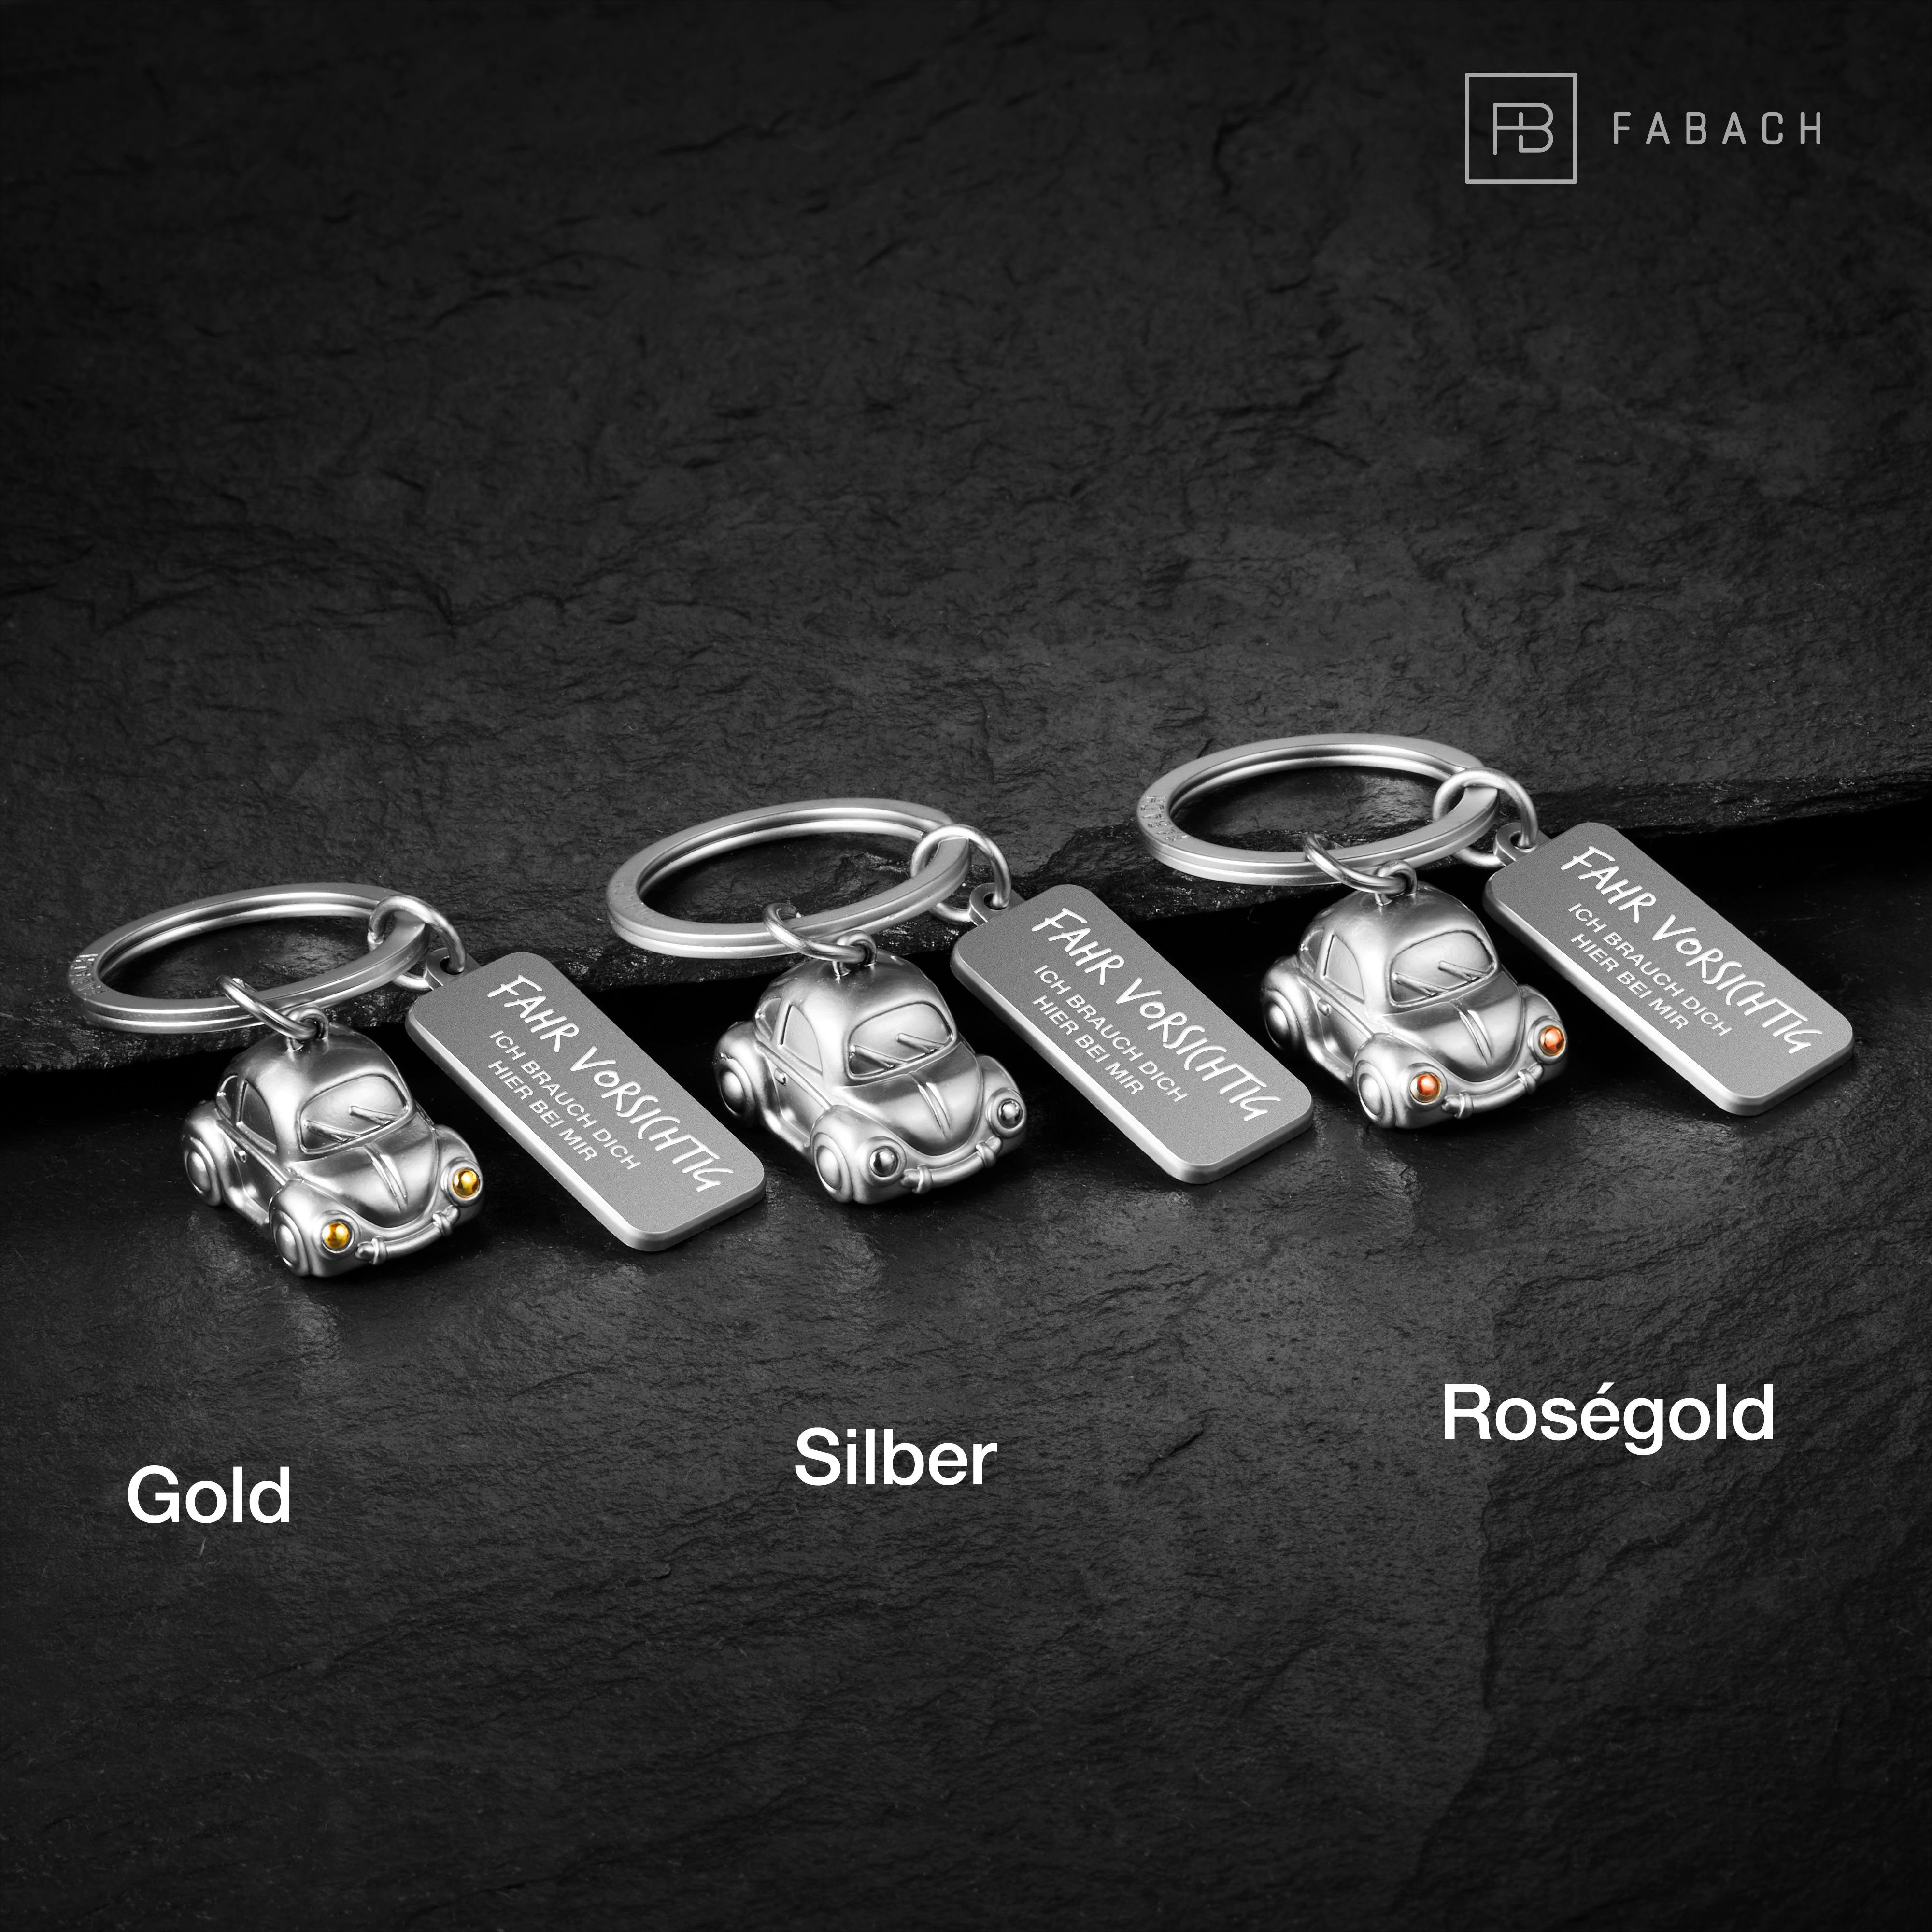 vorsichtig" "Fahr "Car" Auto mit Glücksbringer FABACH Miniatur - Schlüsselanhänger Gravur Gold